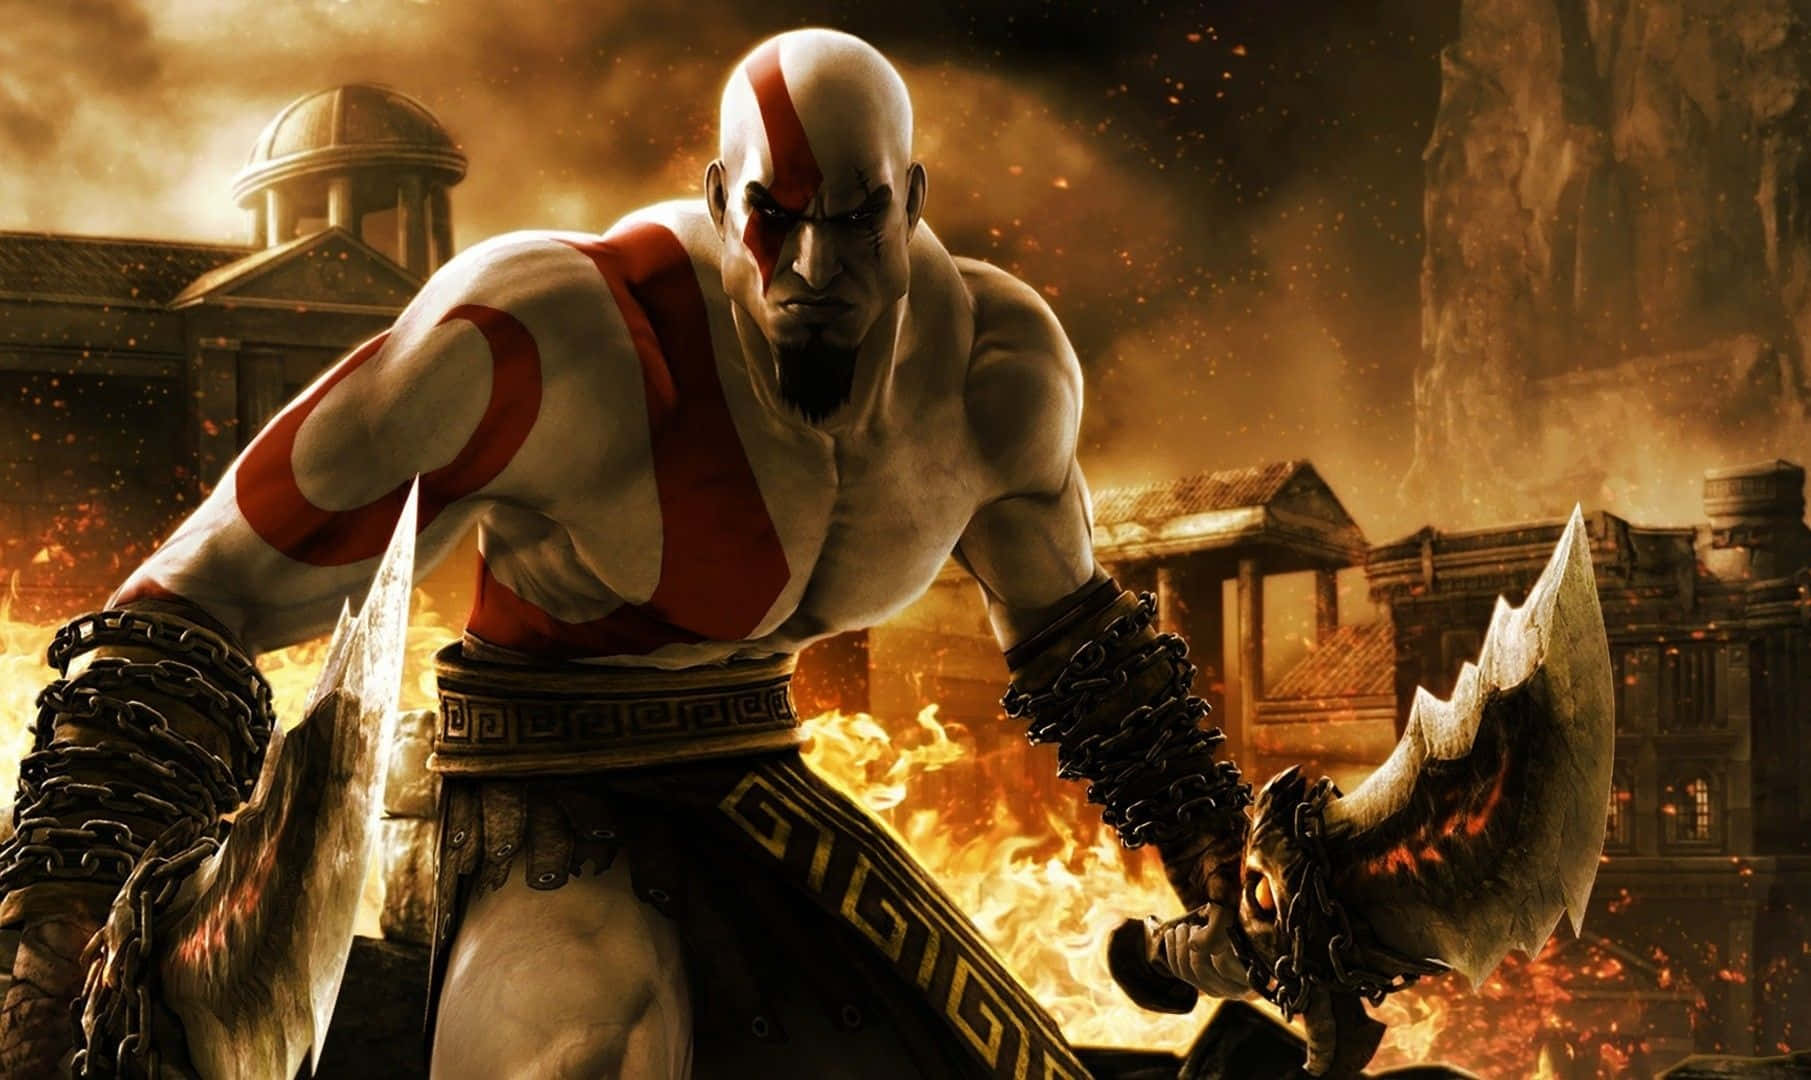 Kratos fights Zeus in God of War III Wallpaper